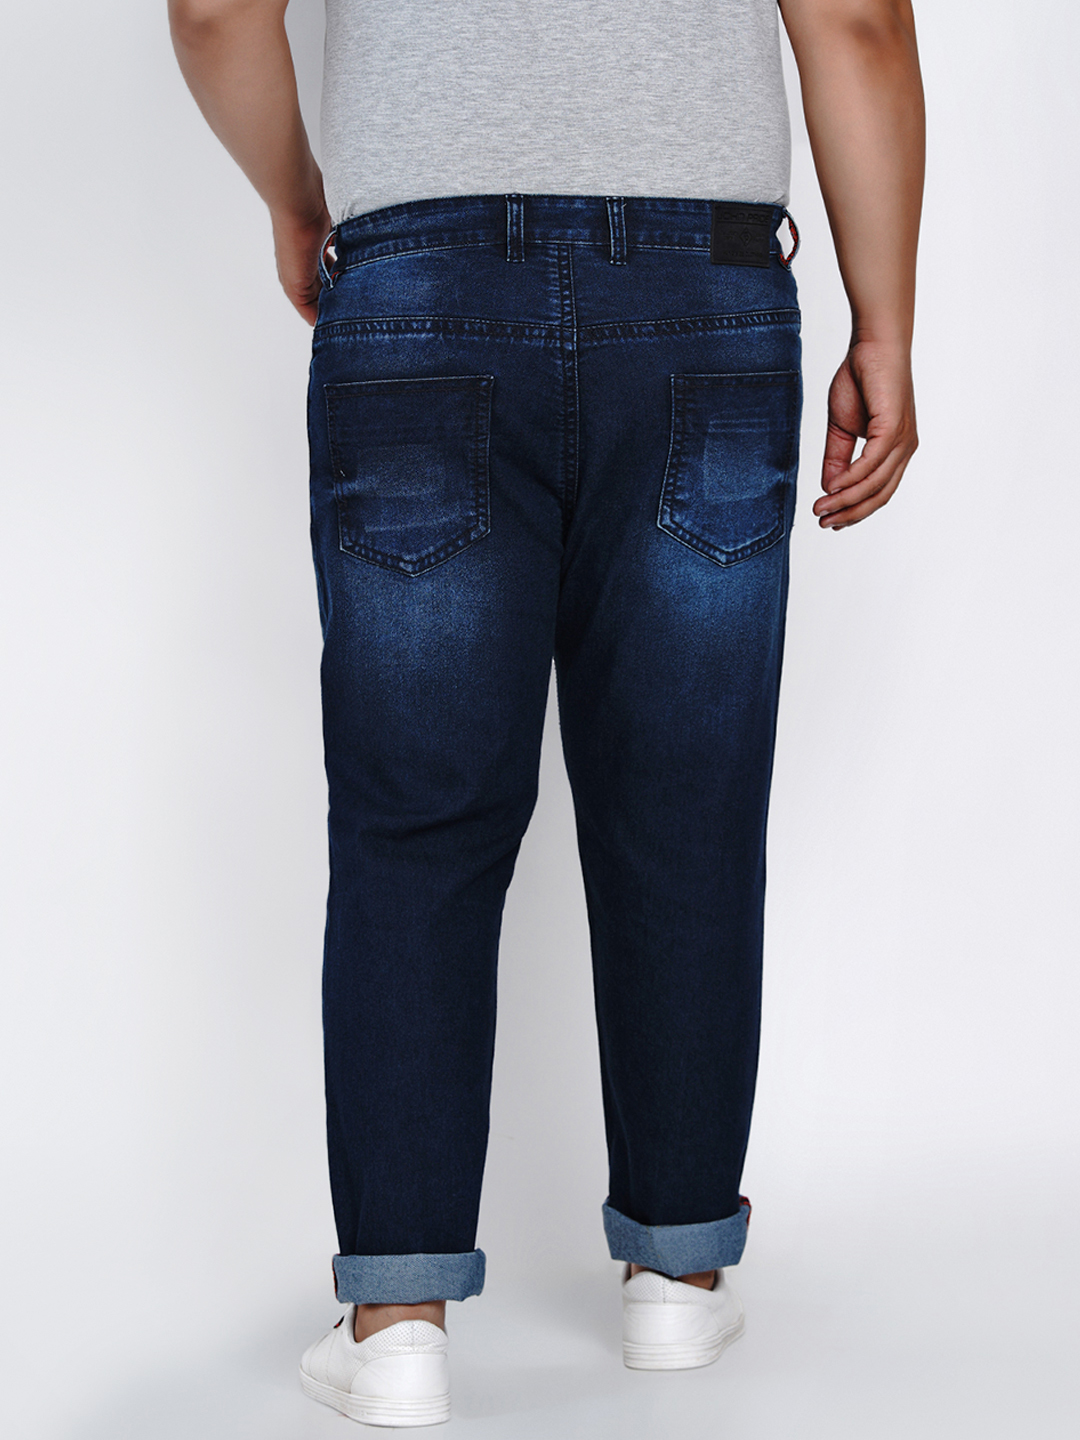 bottomwear/jeans/JPJ2014/jpj2014-5.jpg